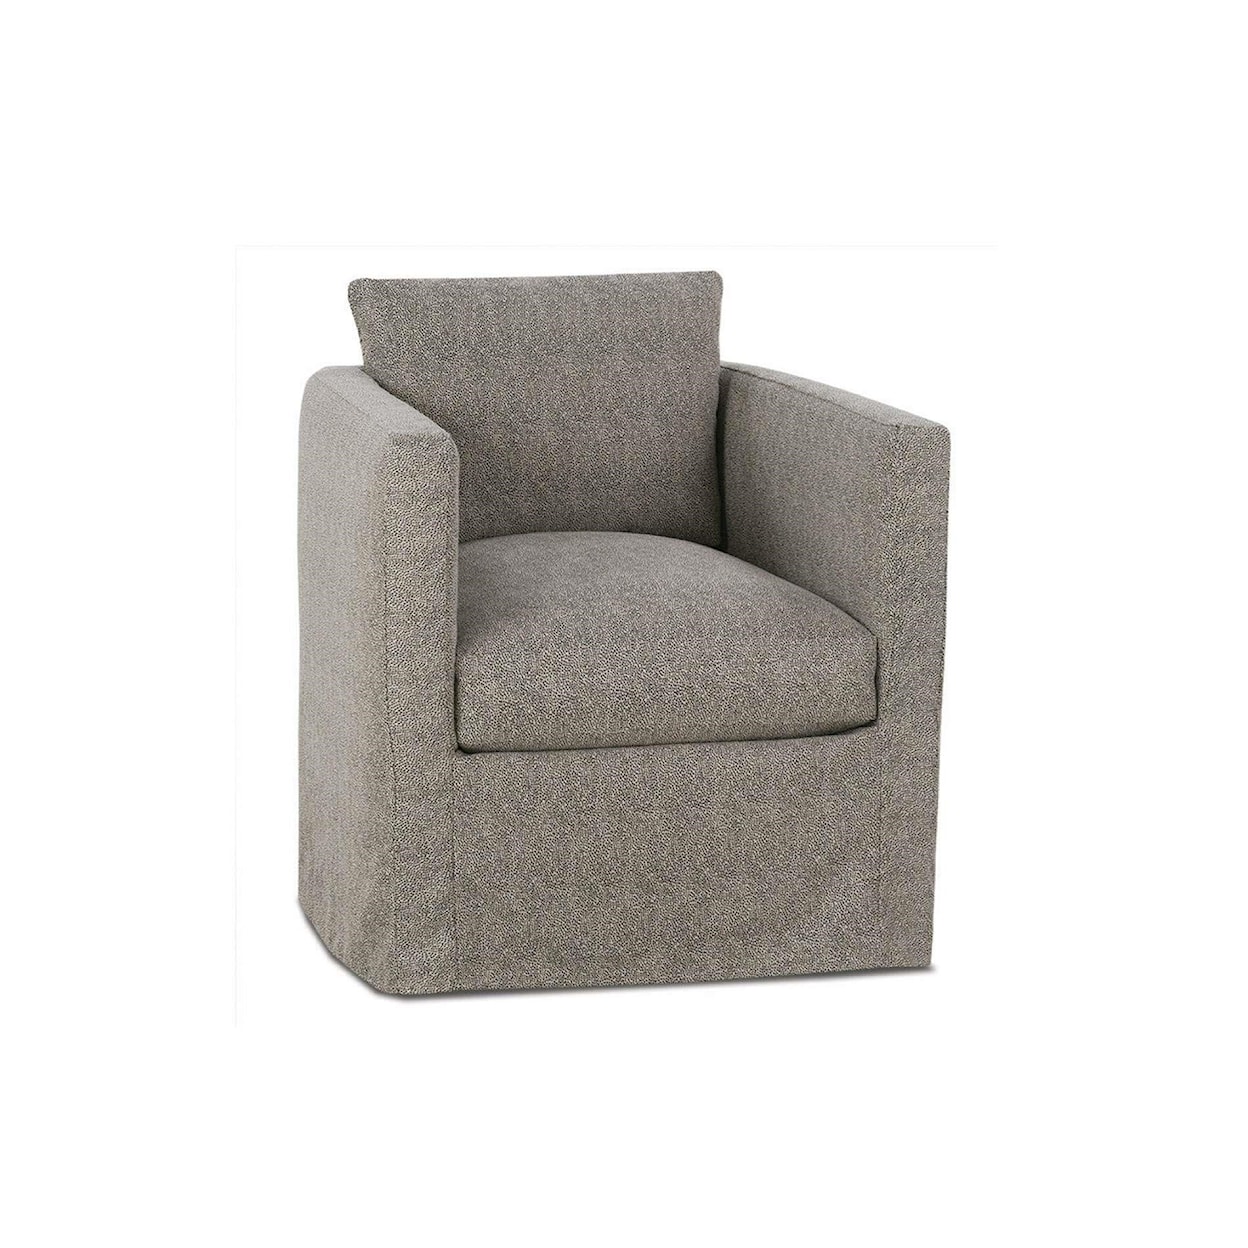 Robin Bruce Rothko Upholstered Chair